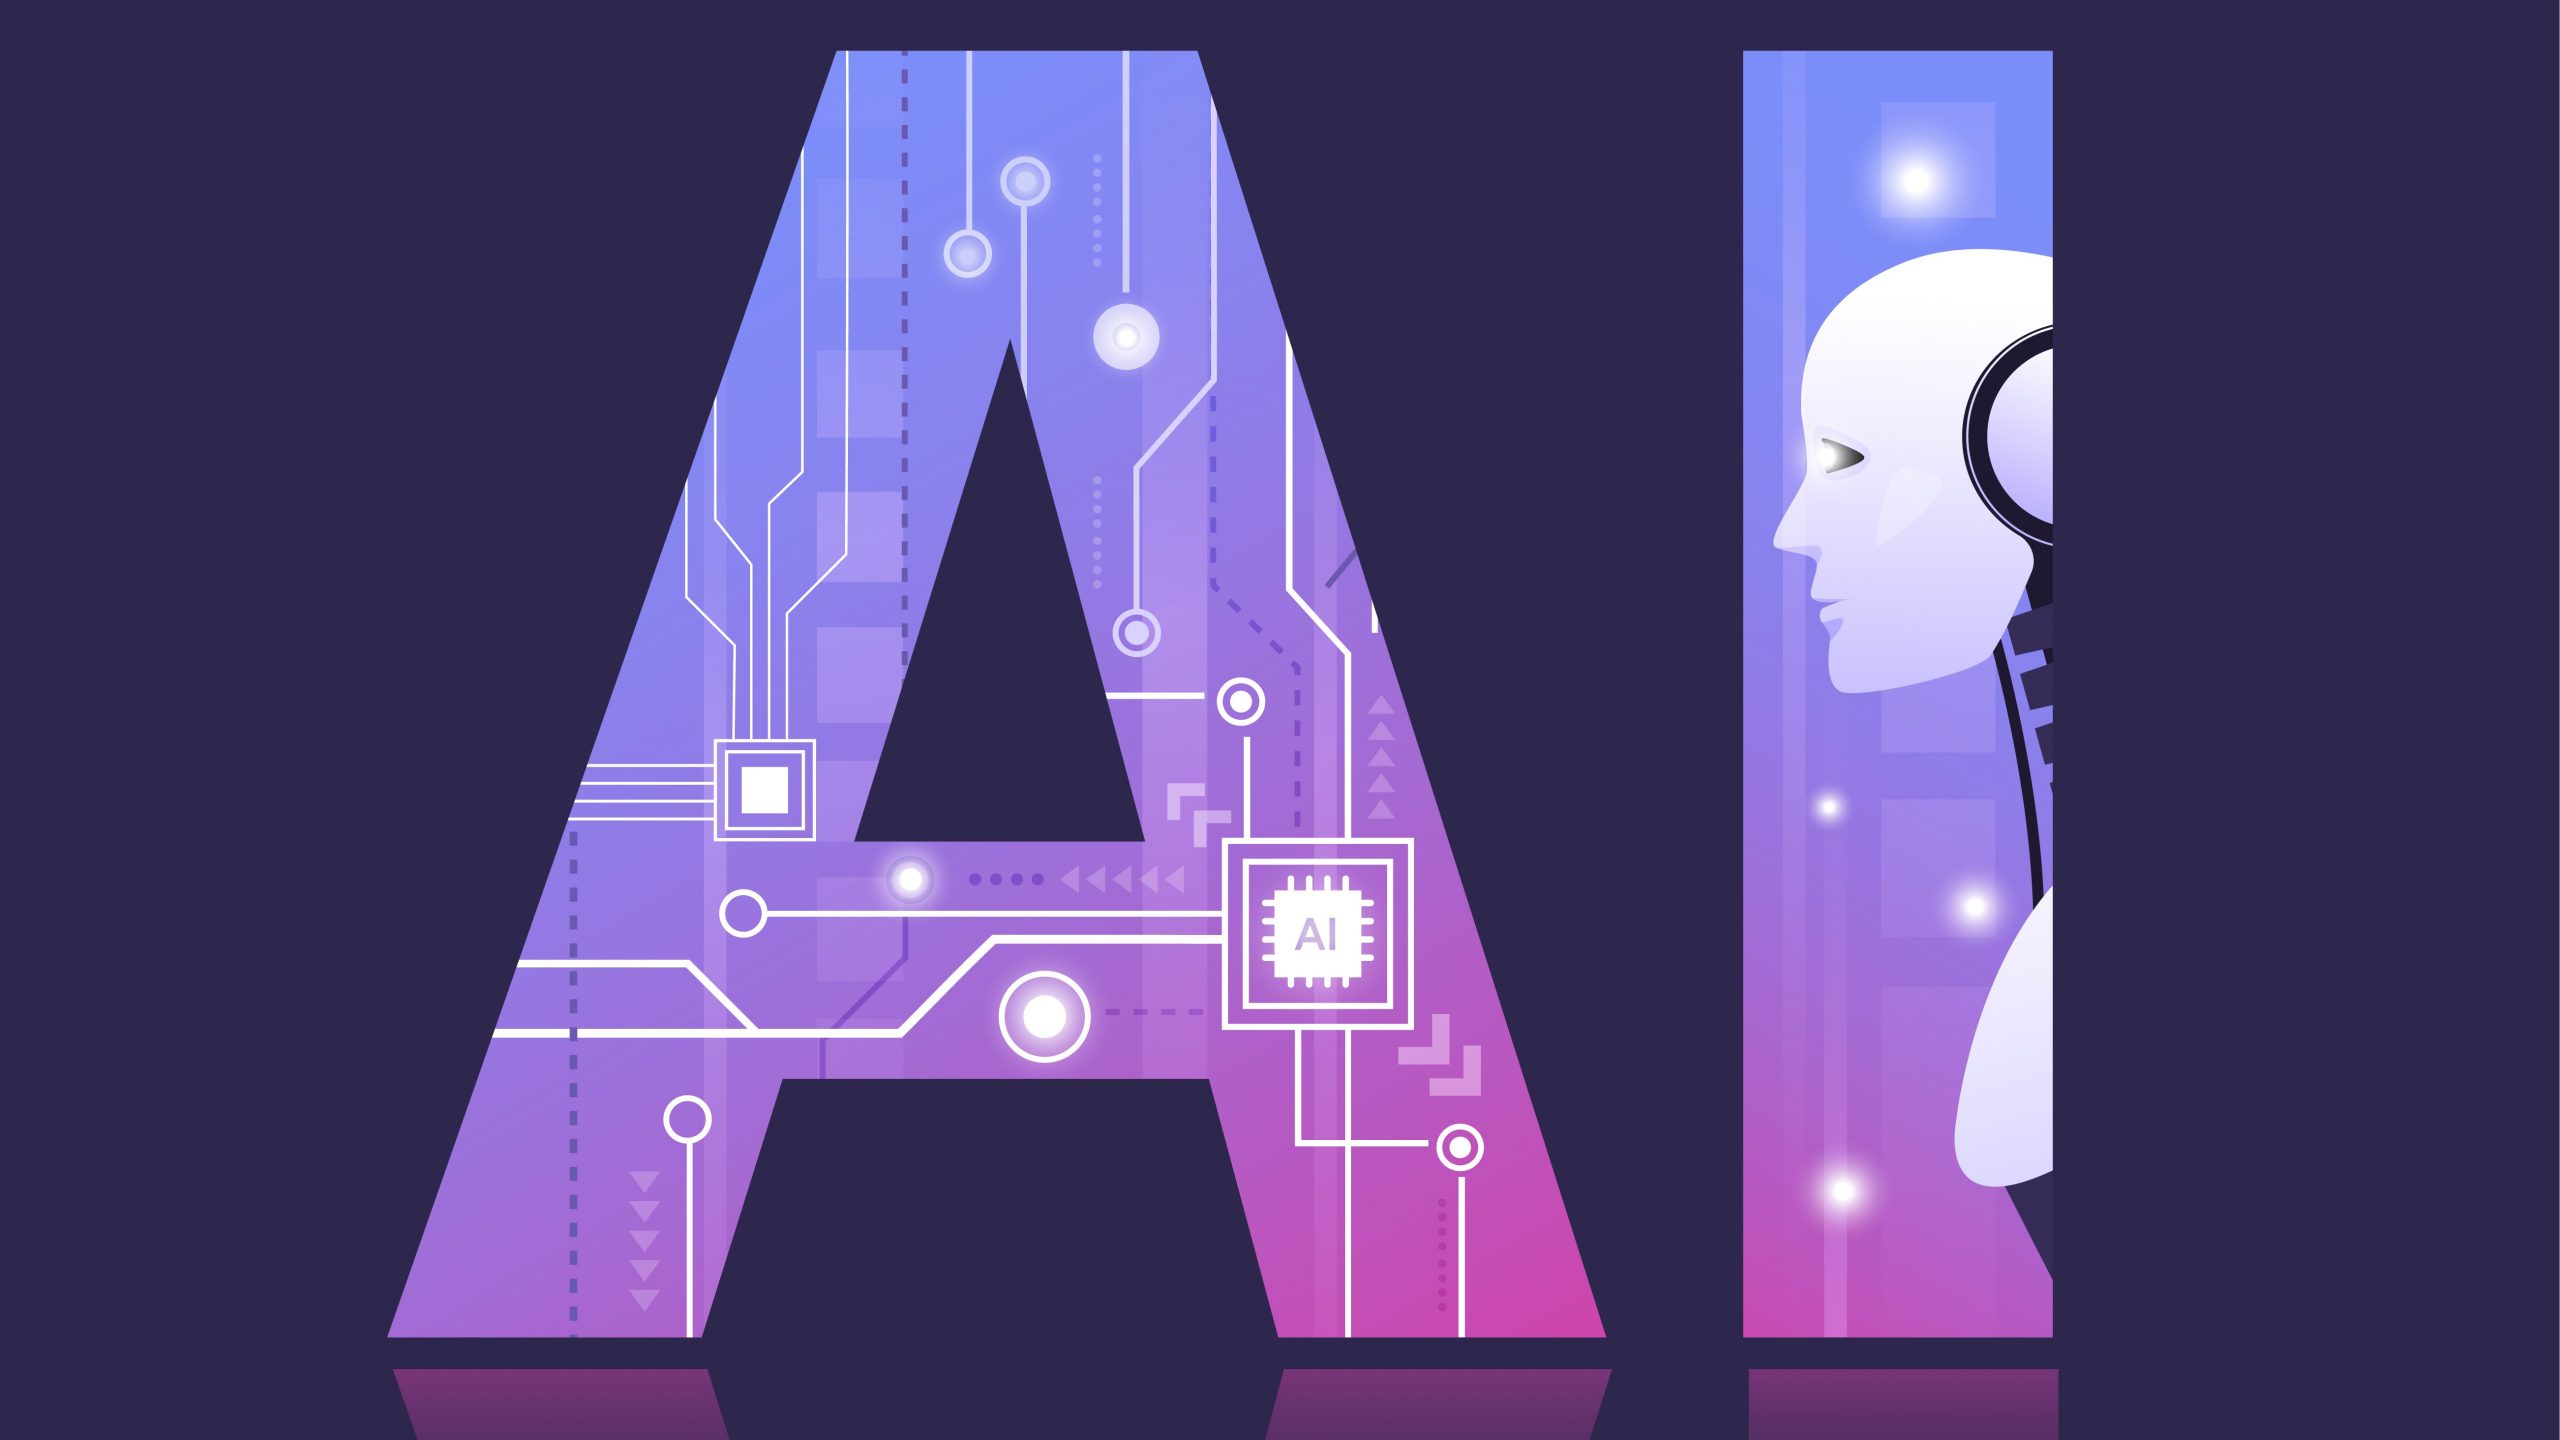 图片展示了一个结合了电路板图案的大写字母“A”，旁边是一个代表人工智能的机器人头像，整体风格科技感强，色调以紫色为主。